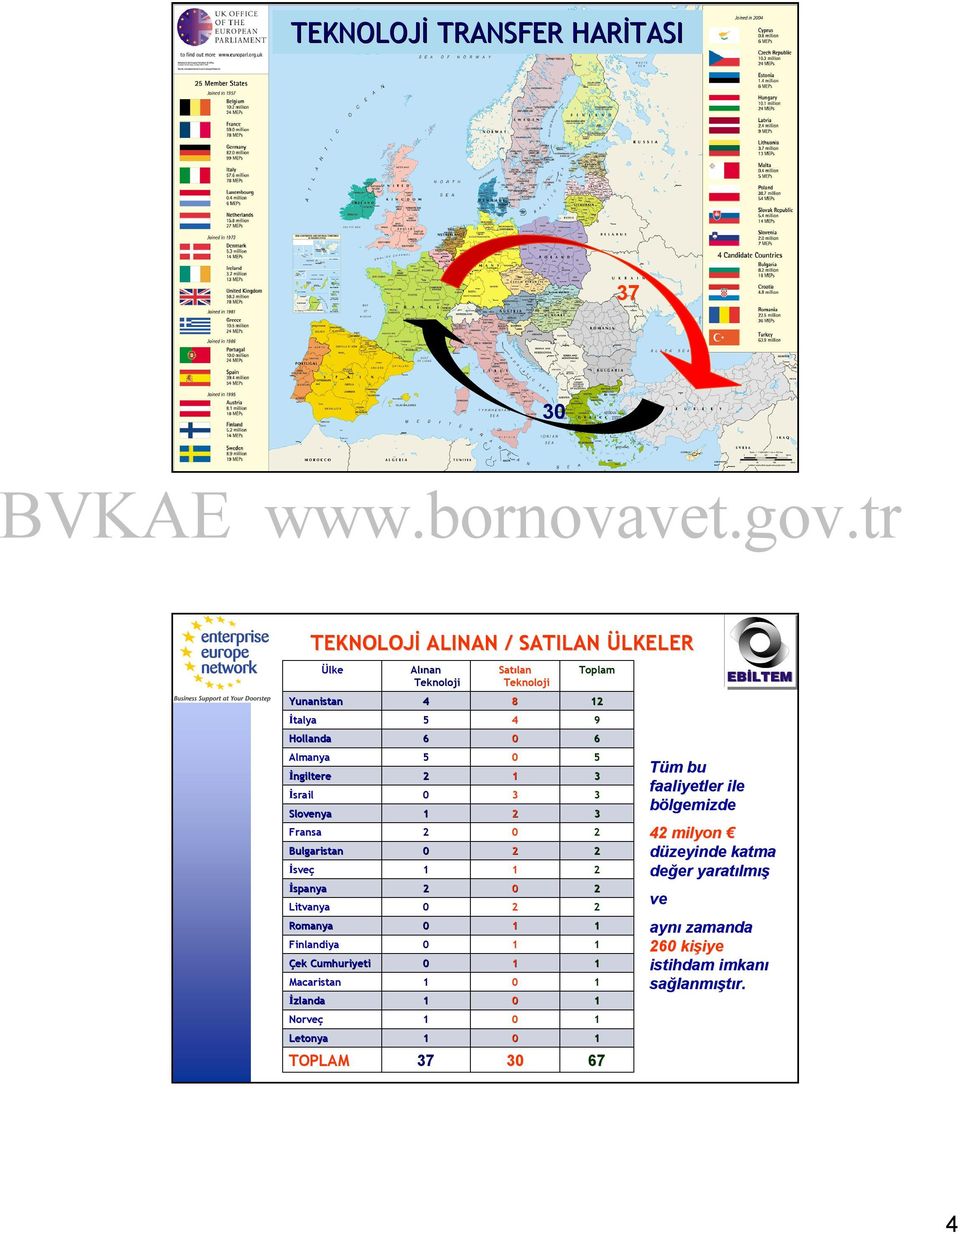 İspanya Litvanya Romanya Finlandiya Çek Cumhuriyeti Macaristan İzlanda Norveç Norveç Letonya 37 3 67 TOPLAM Tüm bu faaliyetler ile